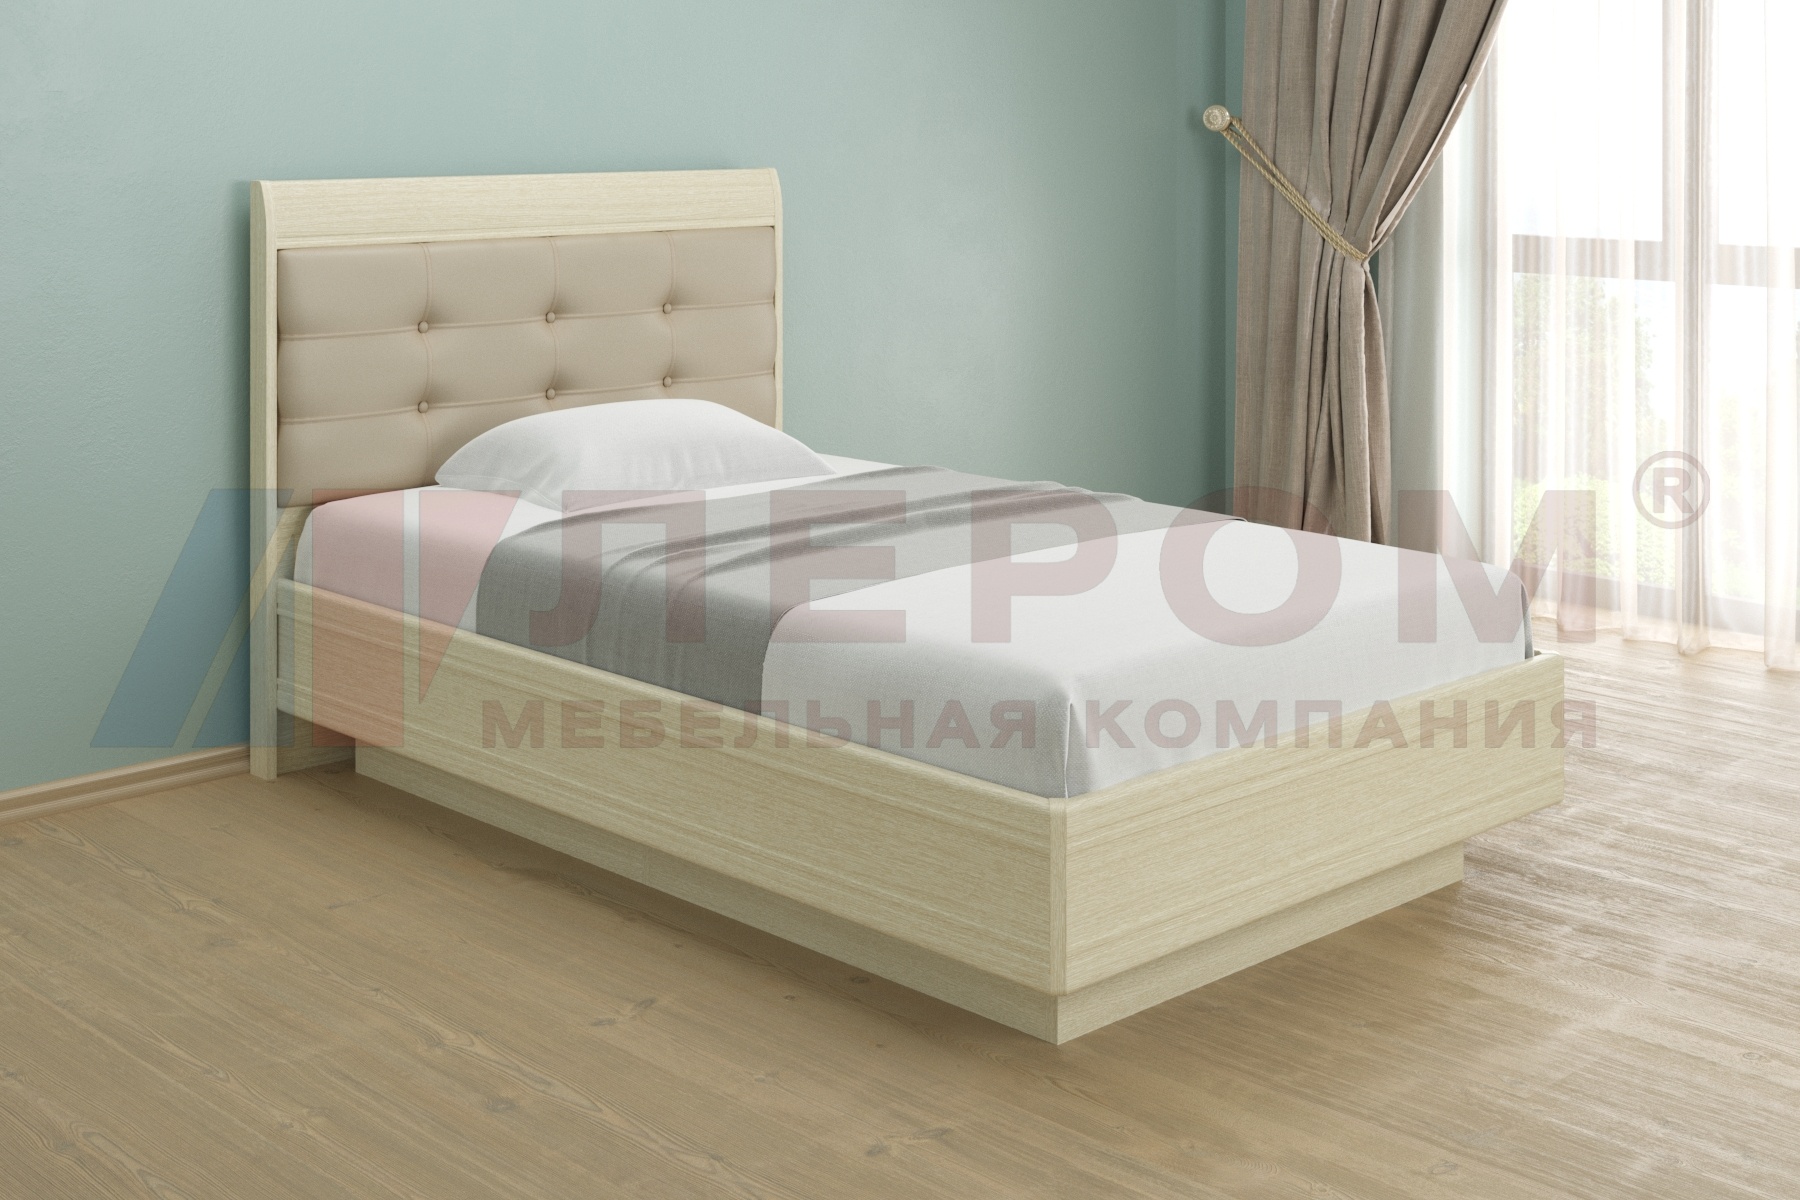 КР-1851 кровать (1,2*2,0)